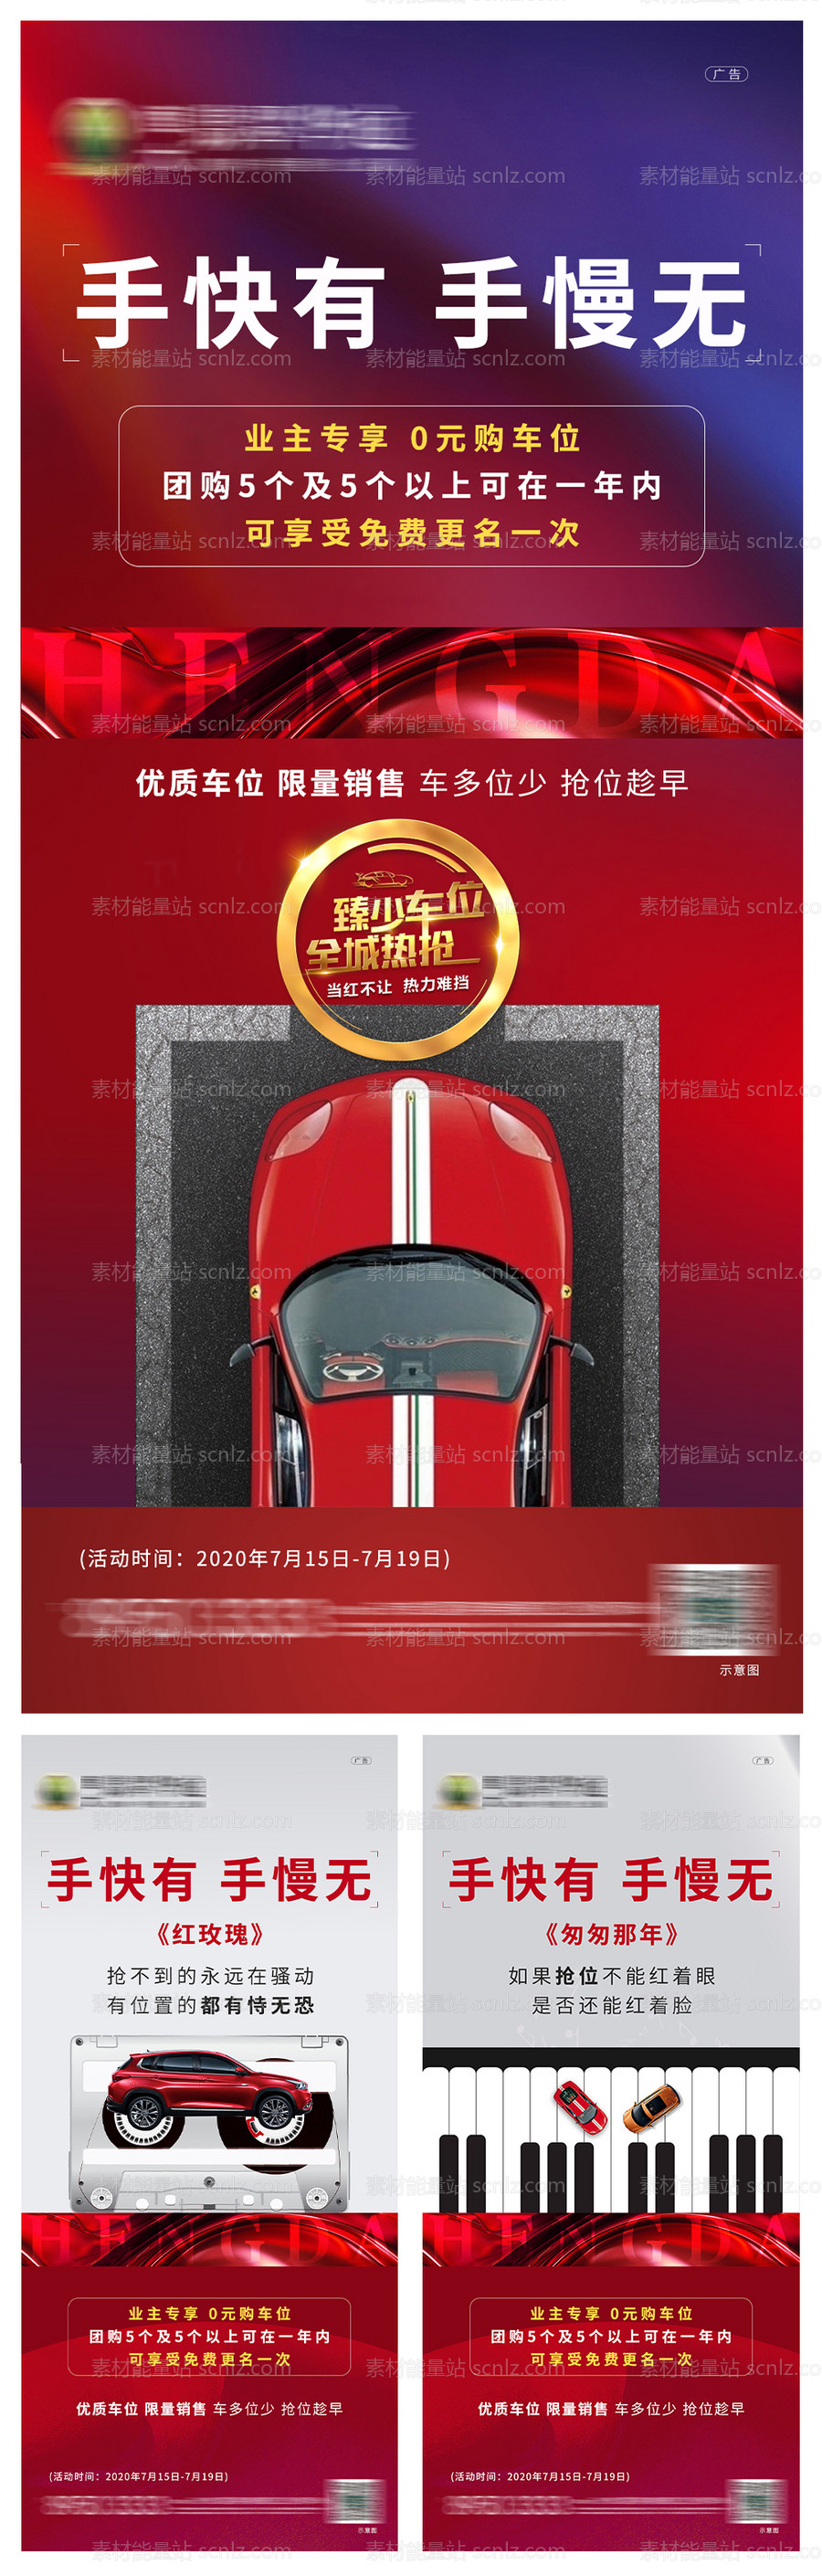 素材能量站-创意车位系列海报